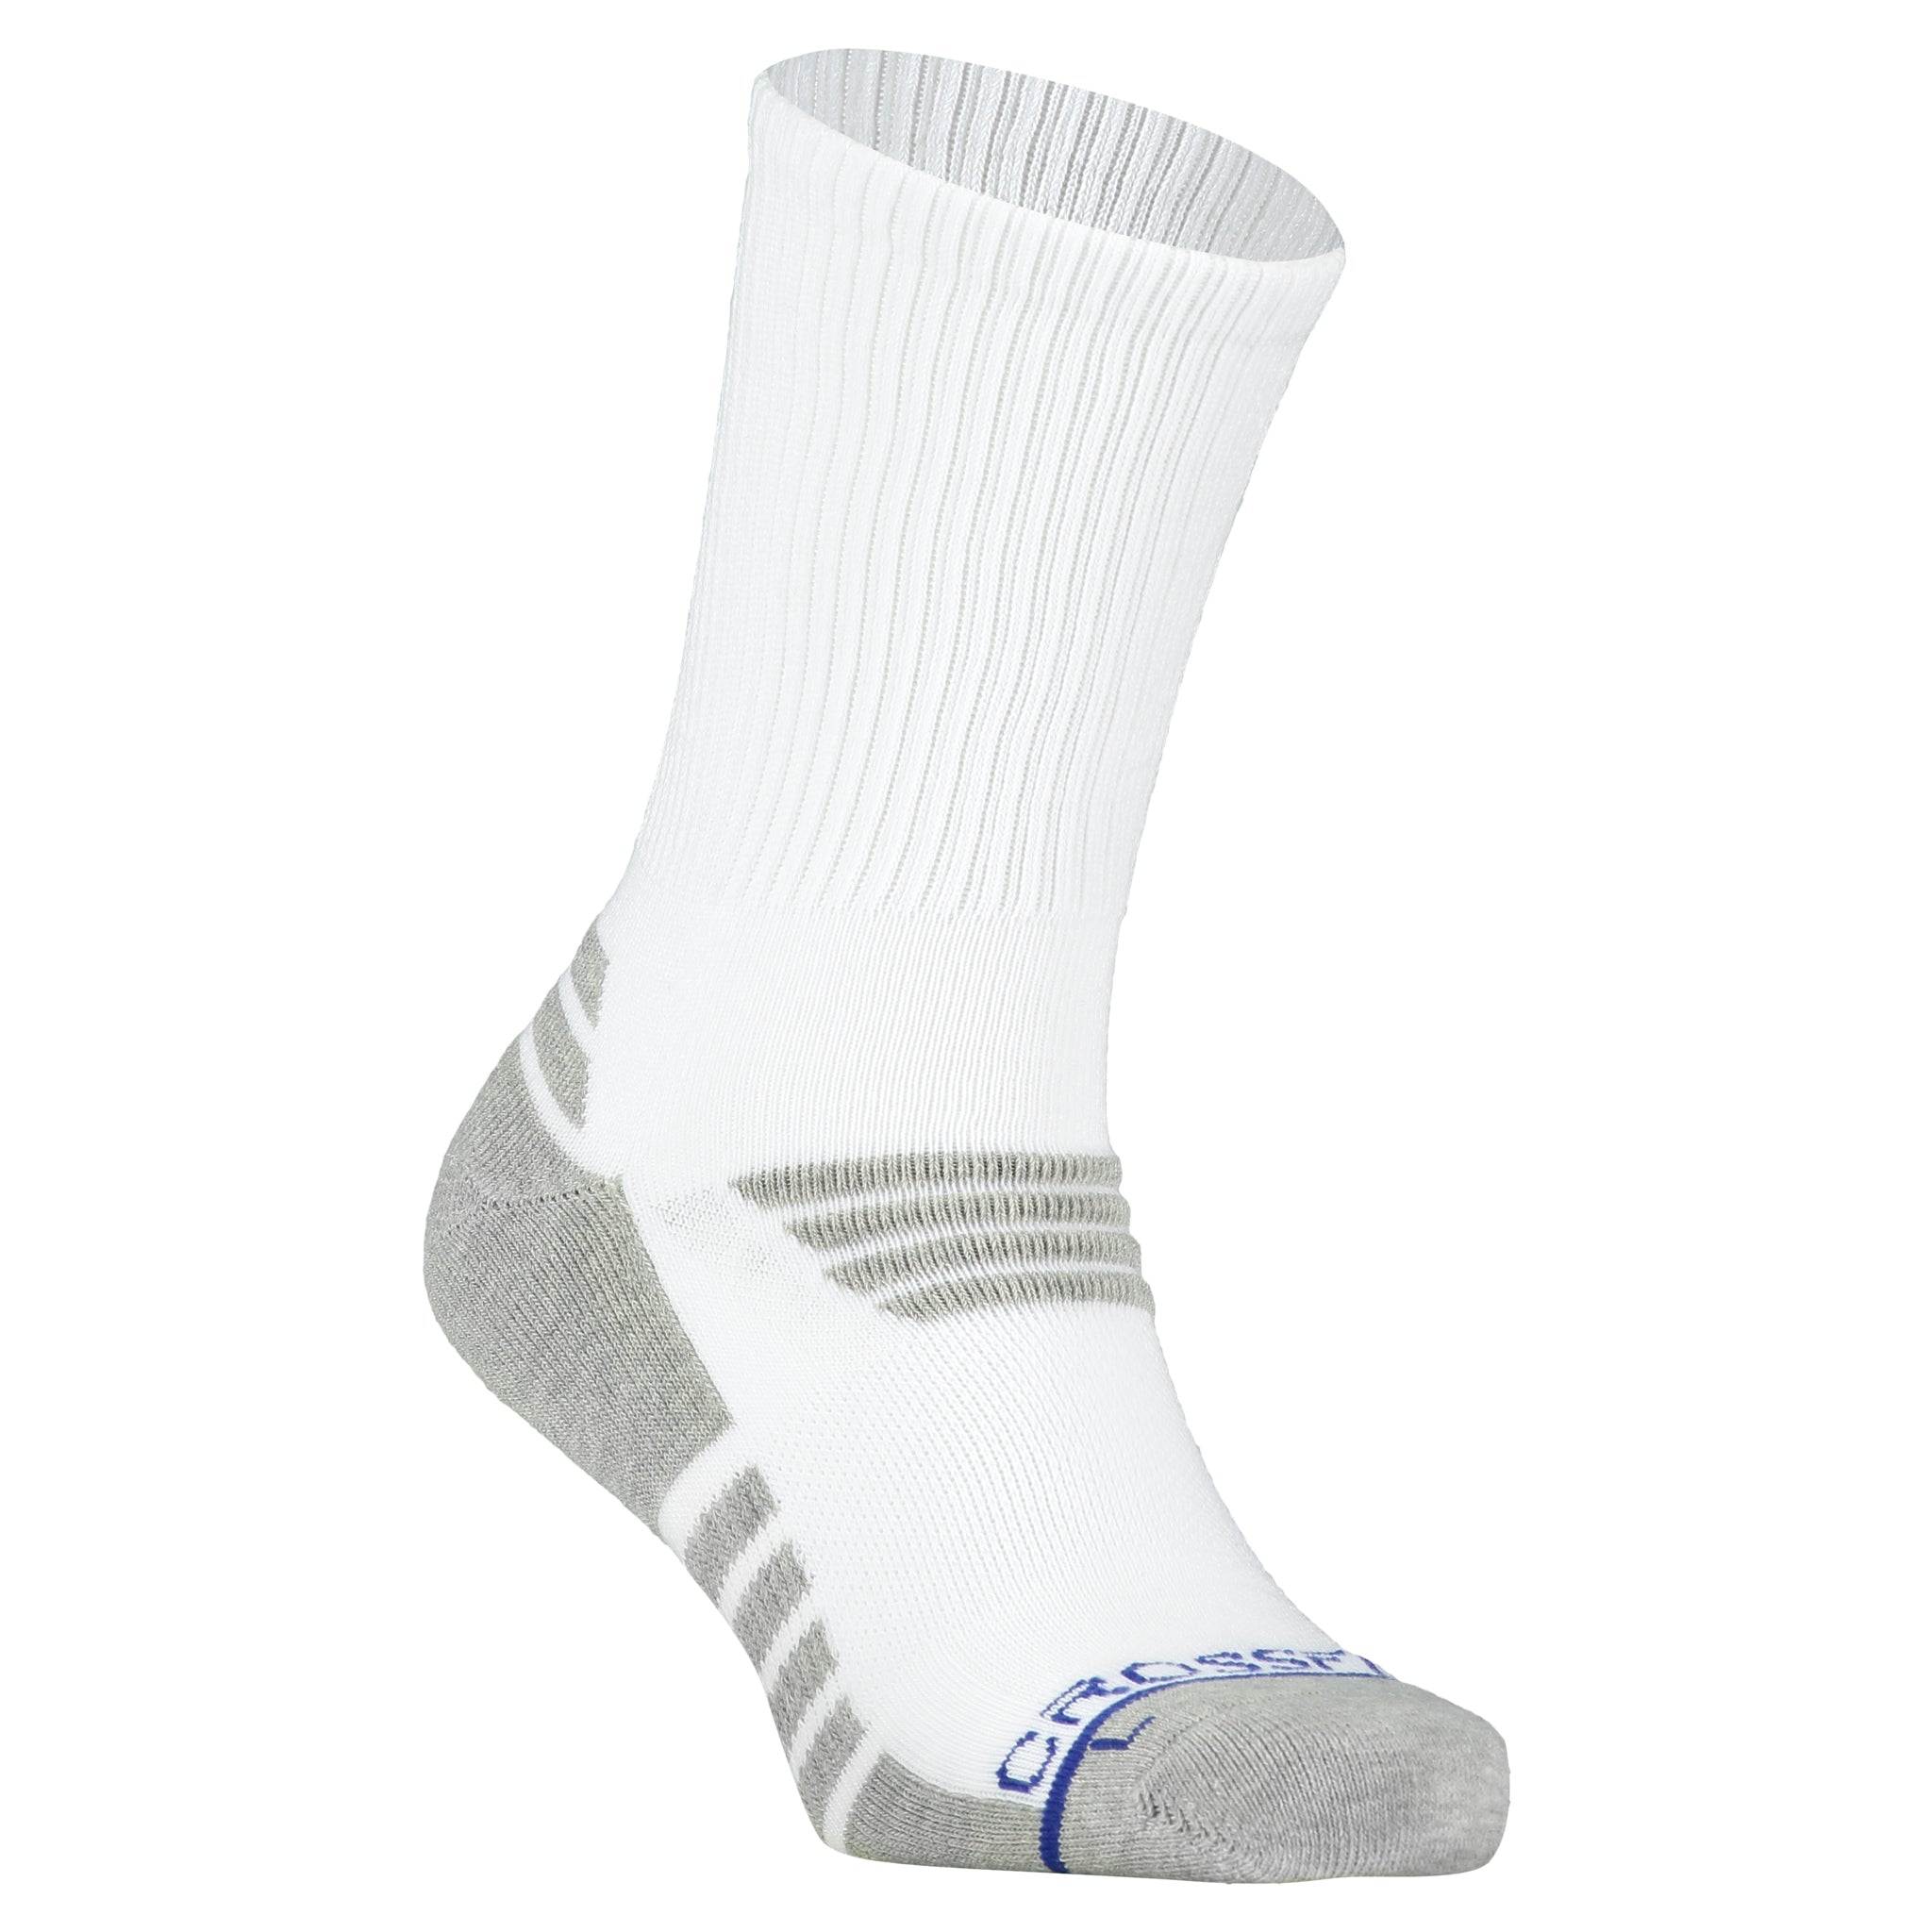 Crossfly Men's Performance Socks HERO Pro 10 Crew White - Nylon Blend